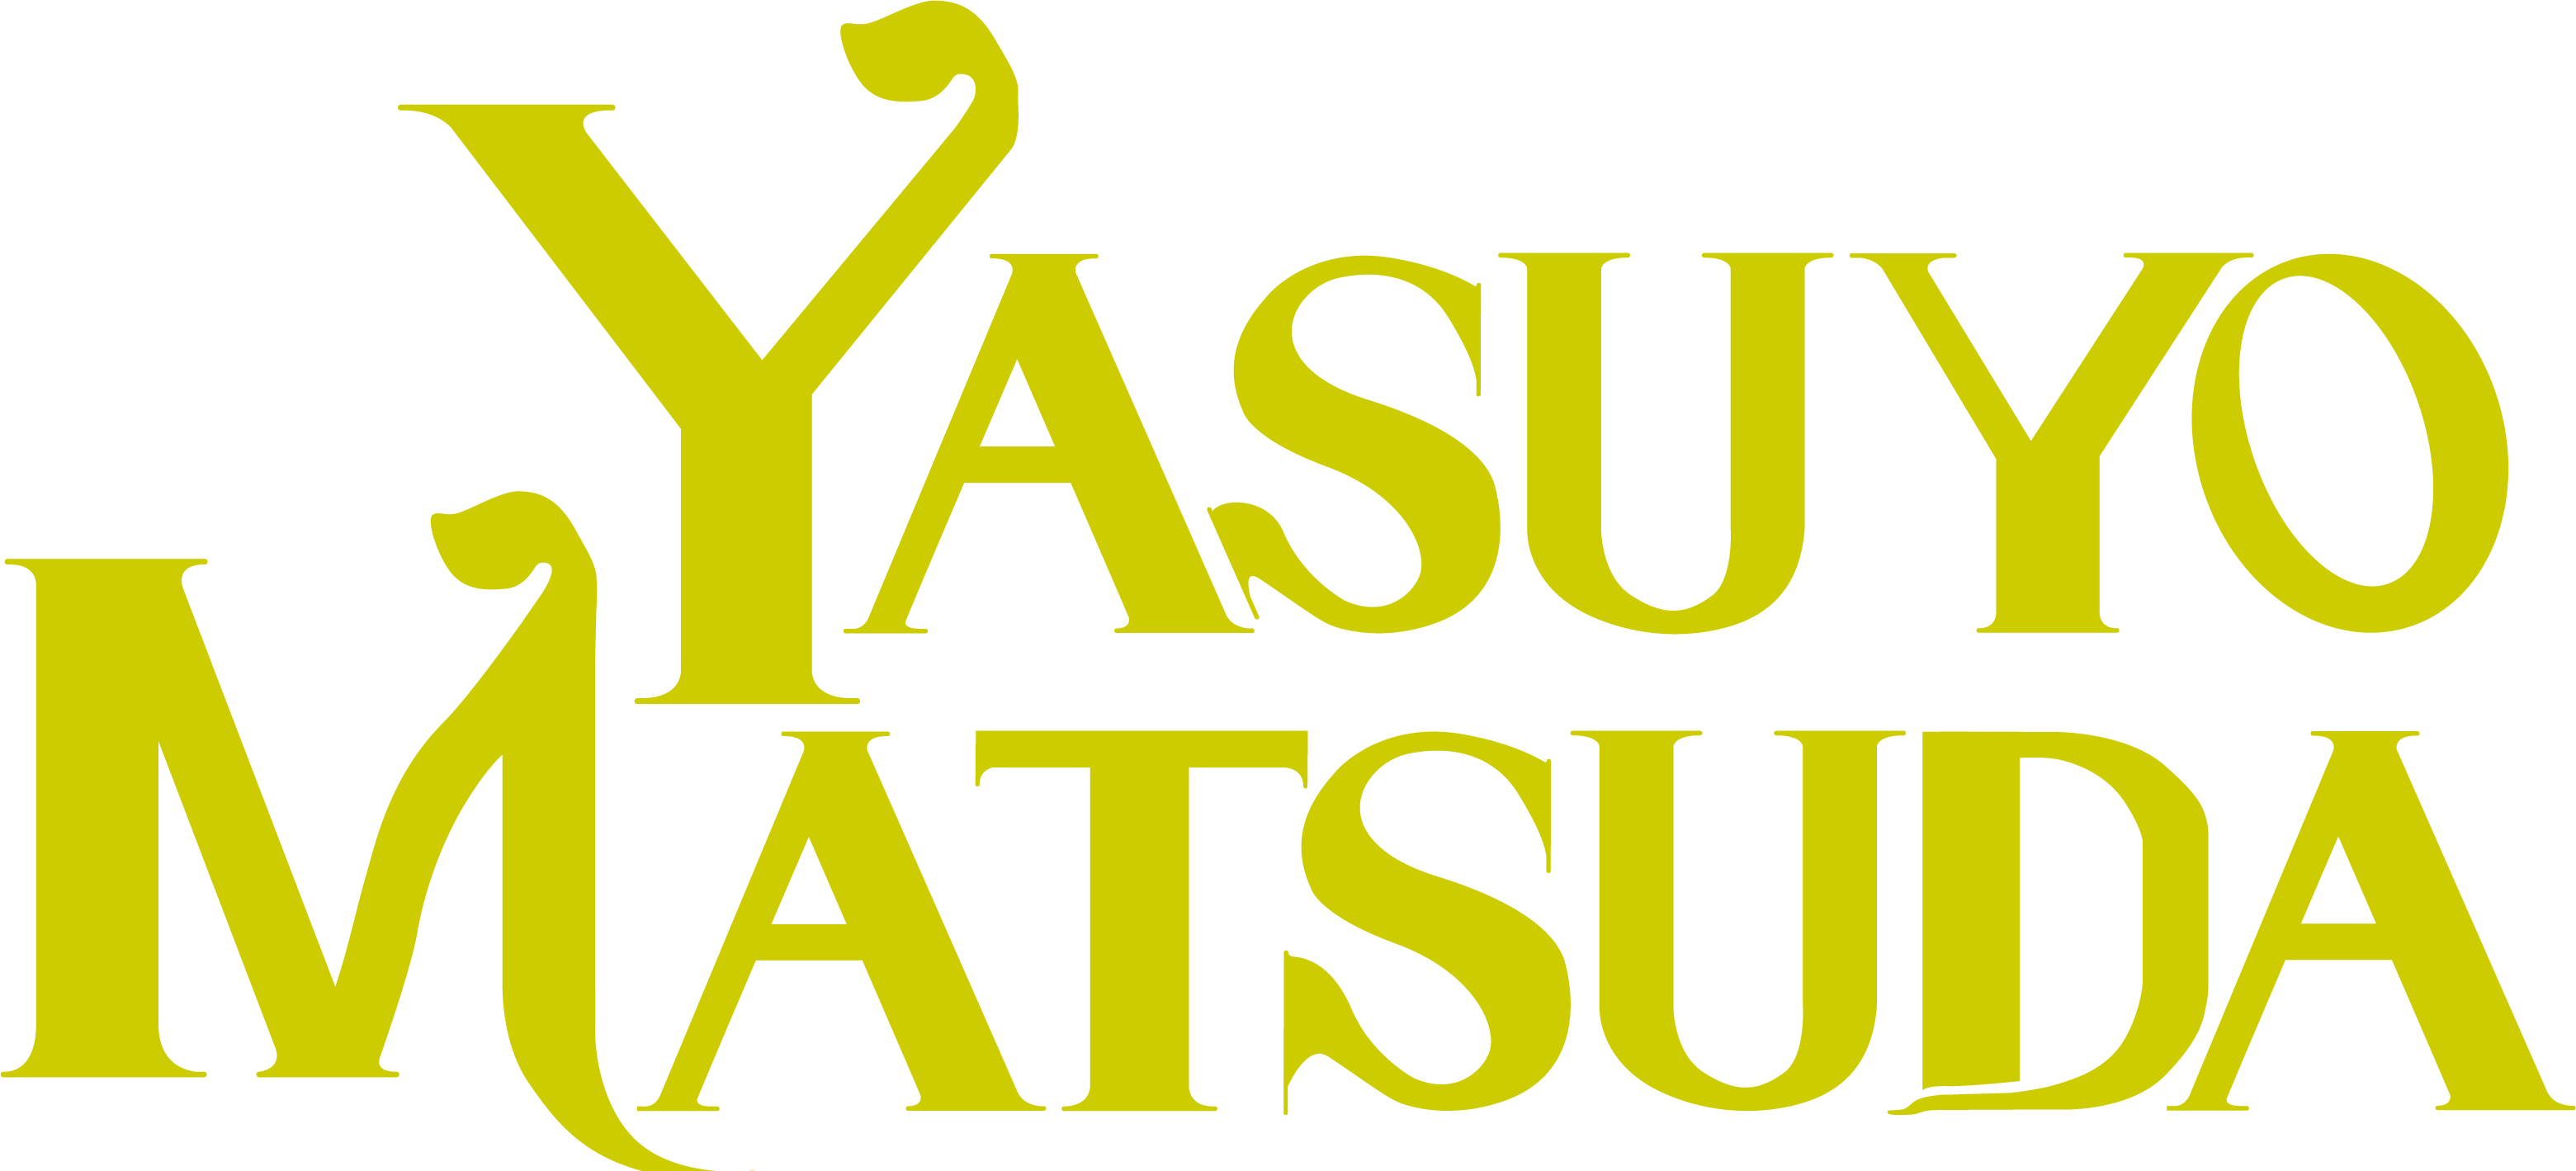 Yasuyo Matsuda - Logo Design